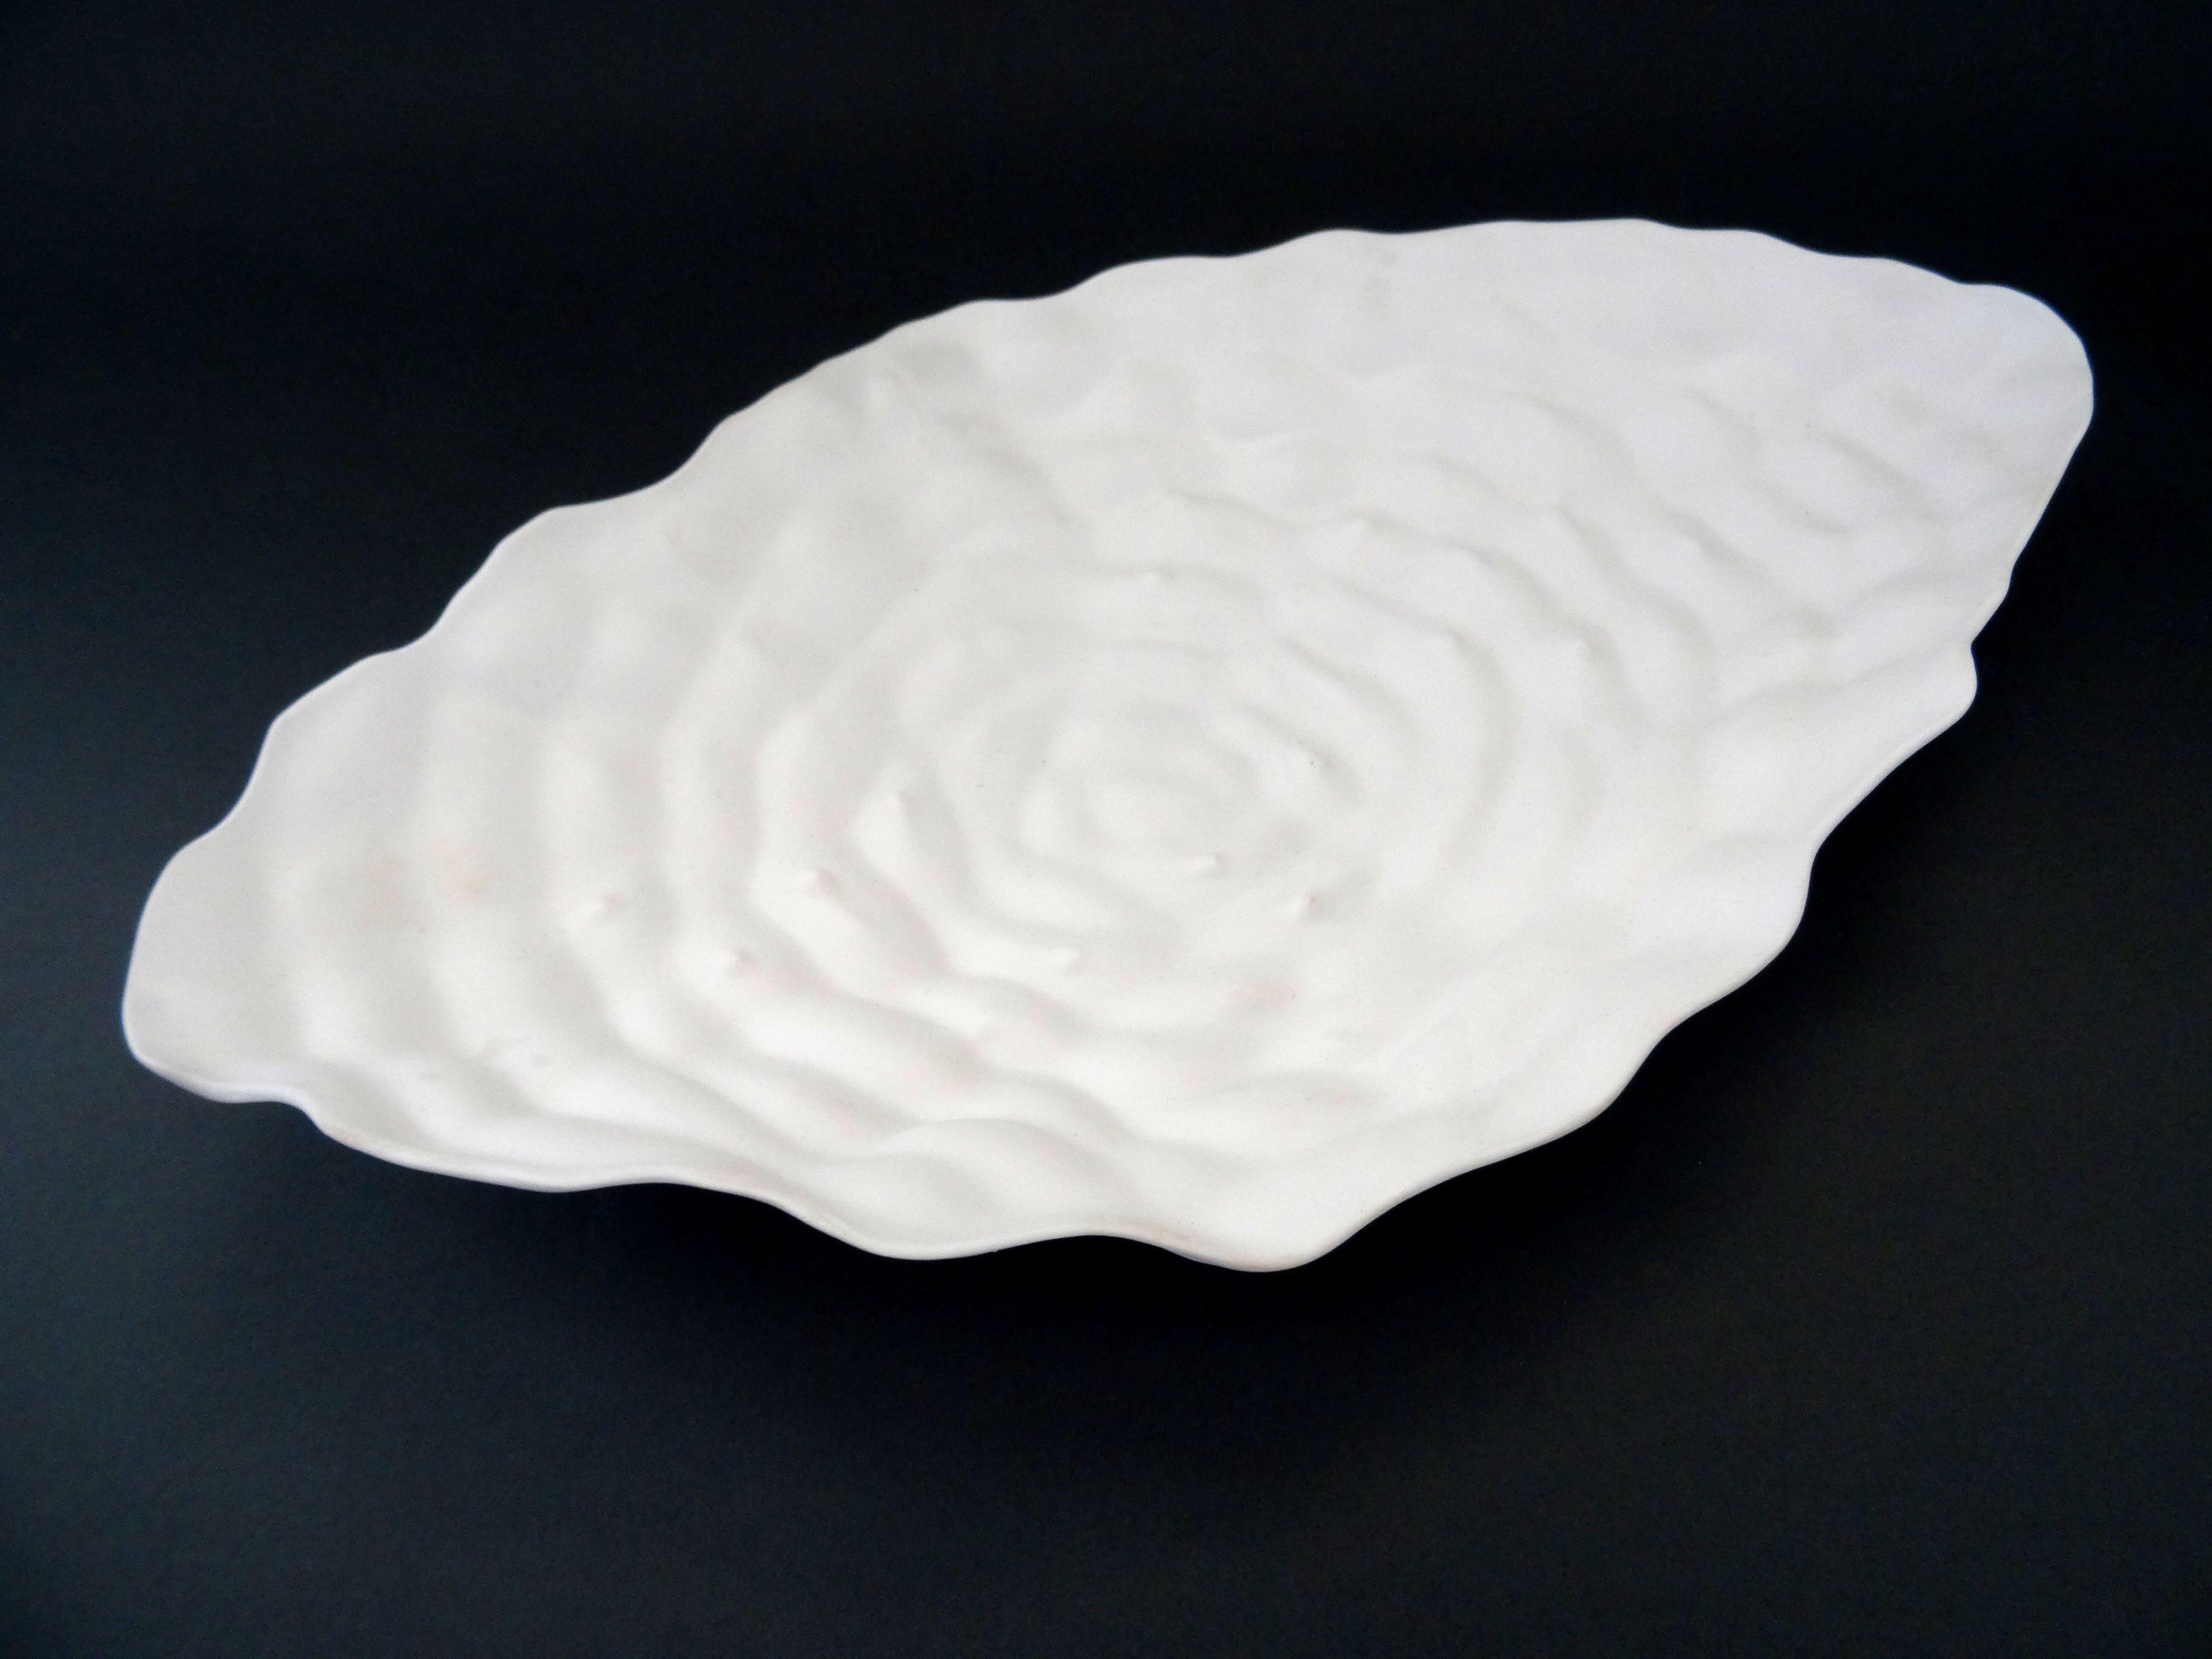 Elina Titane  Abstract Sculpture - Decorative plate "Interaction" porcelain h 5 cm; w 35 cm; d 21 cm